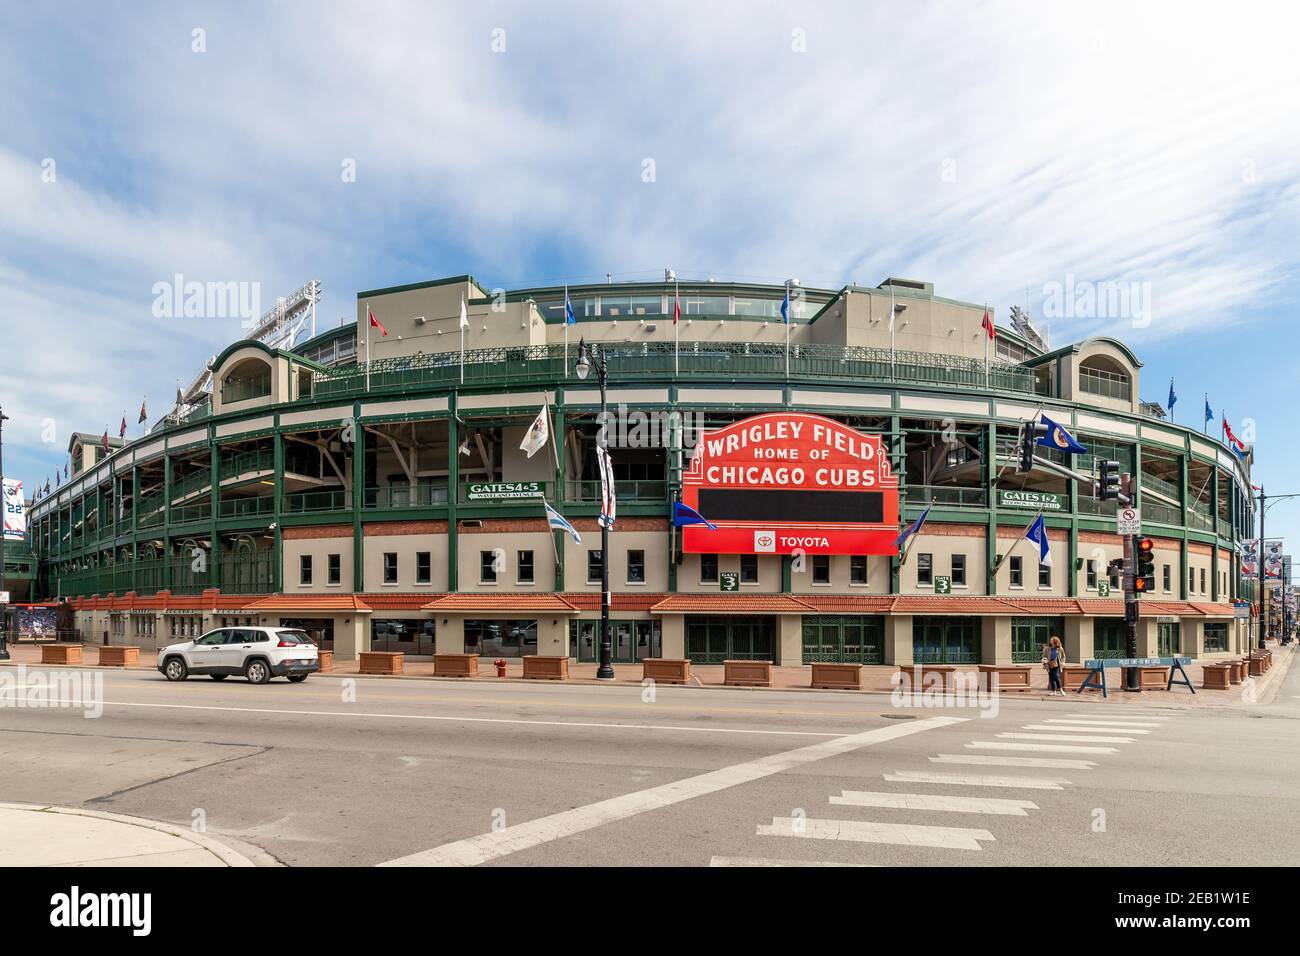 El exterior del estadio Wrigley Field de Chicago Cubs de la Major League Baseball en el barrio Wrigleyville de Chicago. Foto de stock